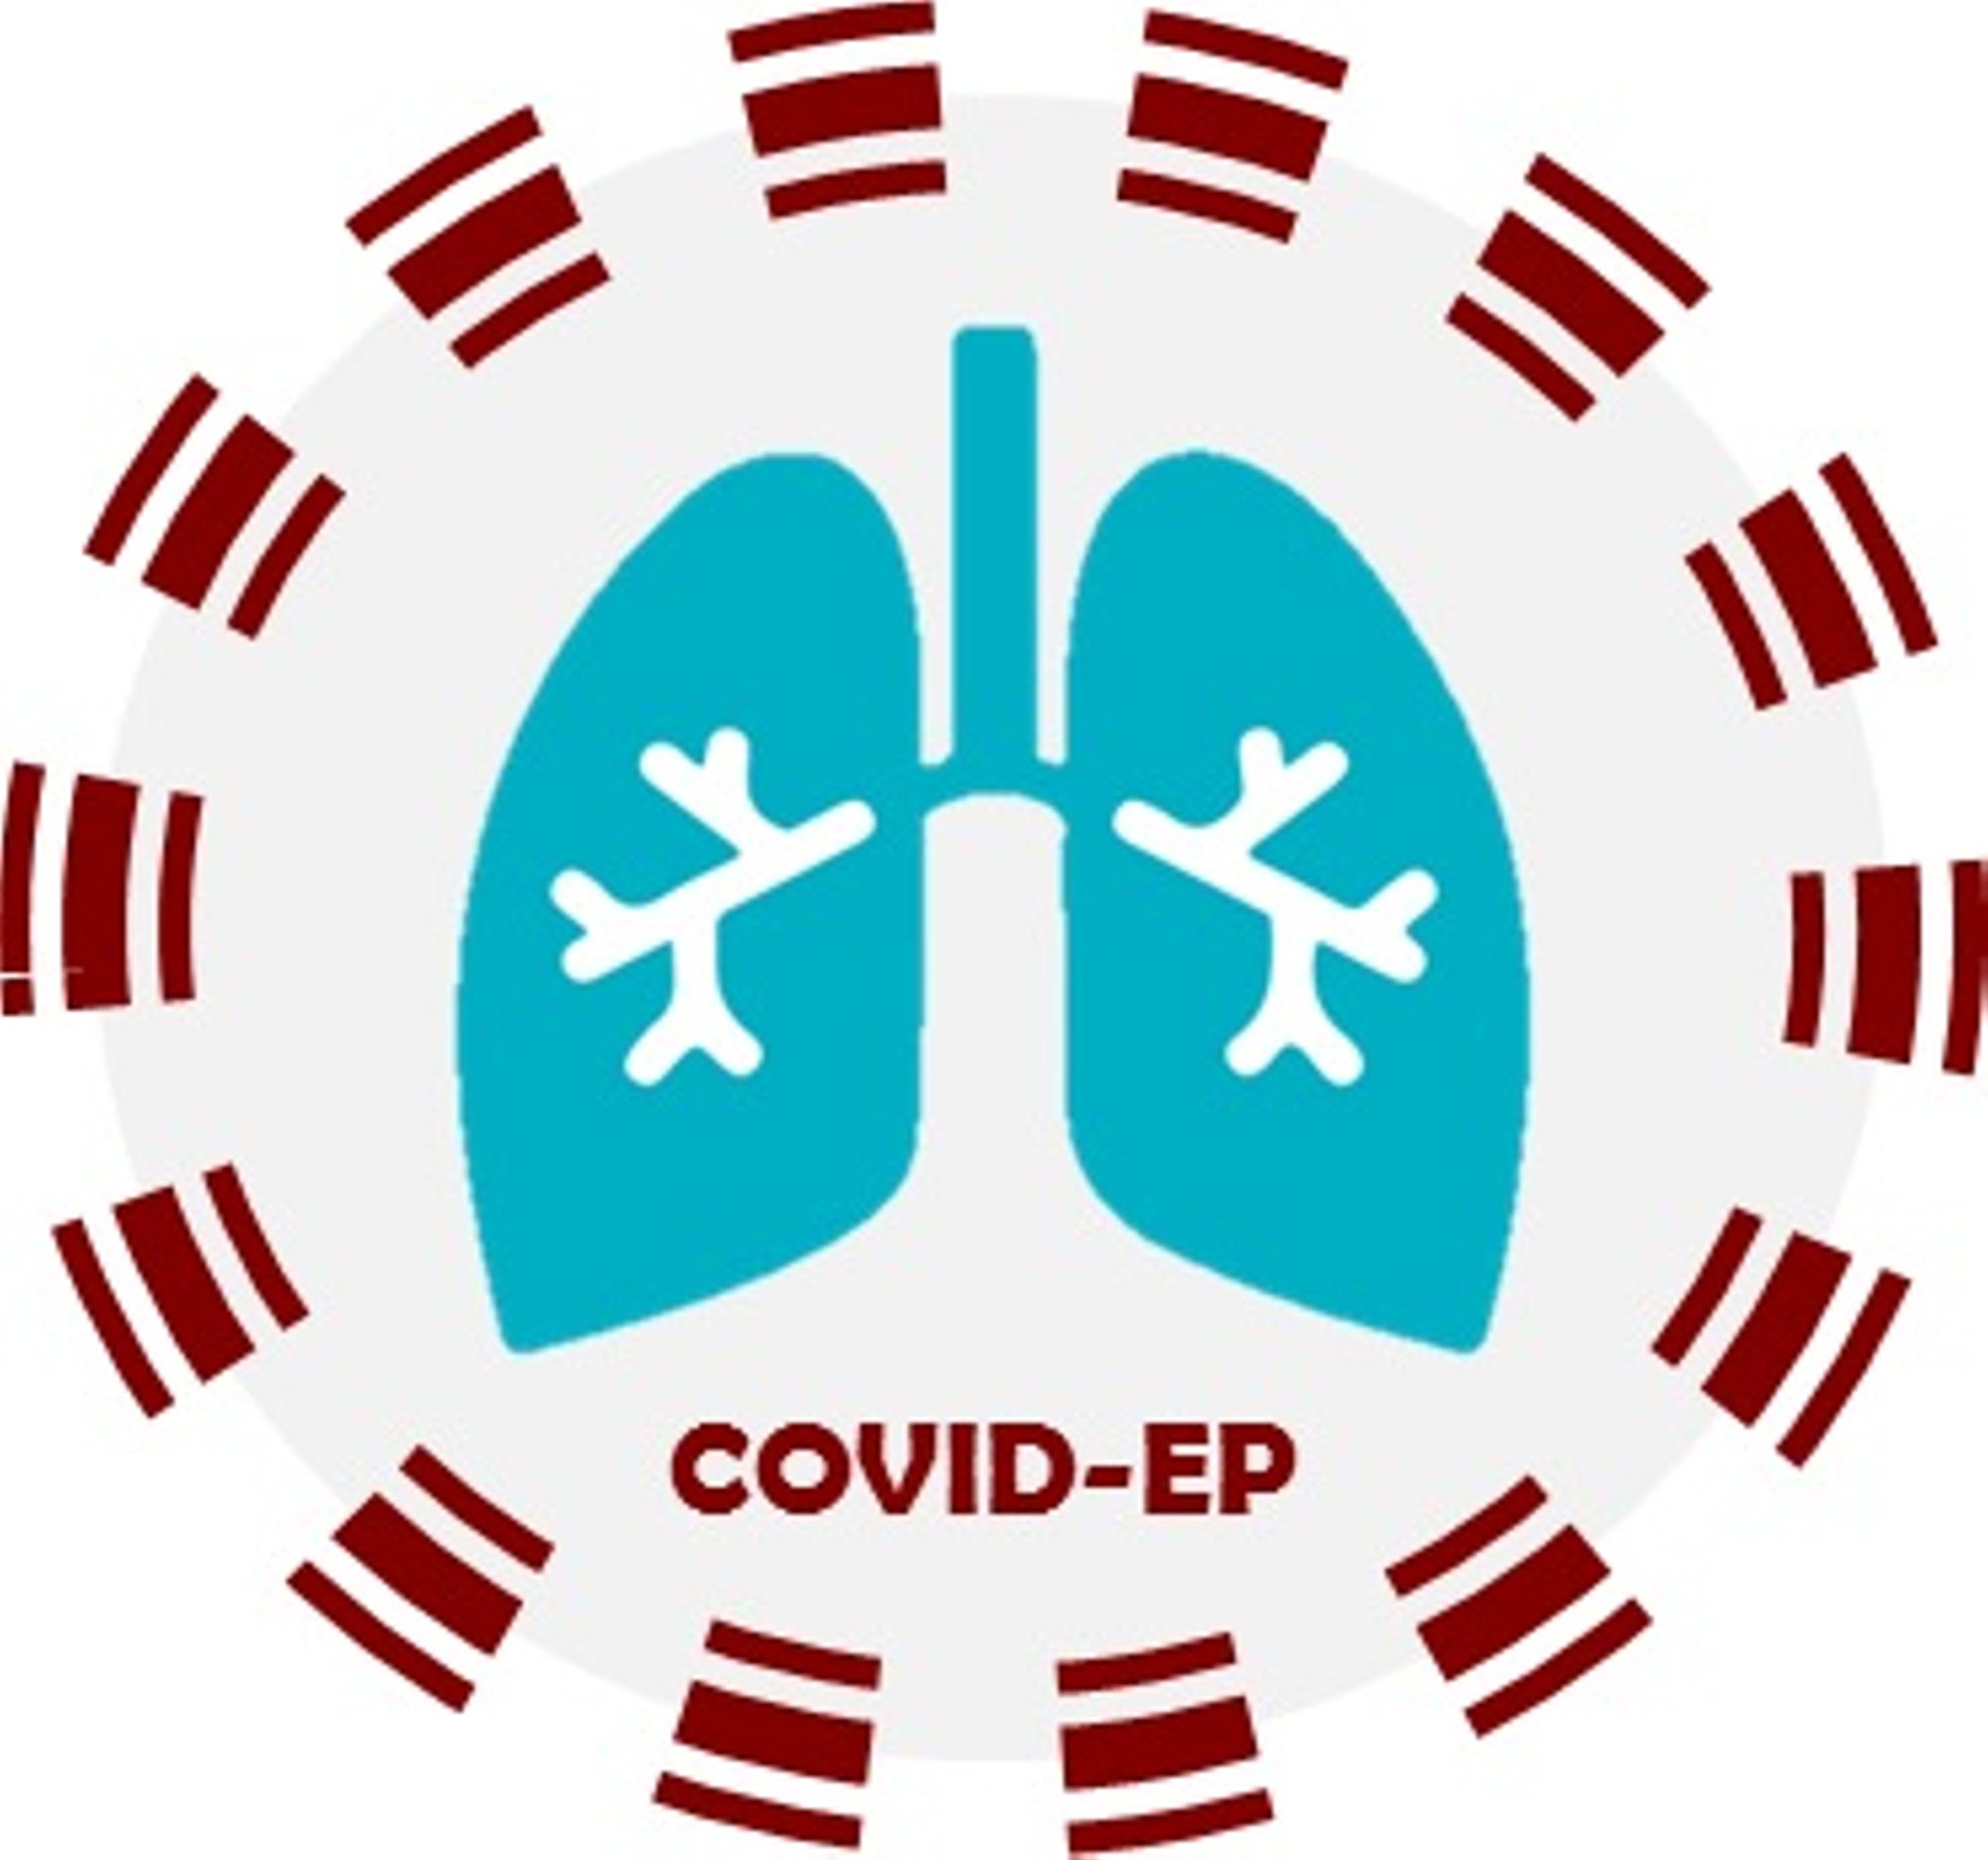 Etude COVID-EP